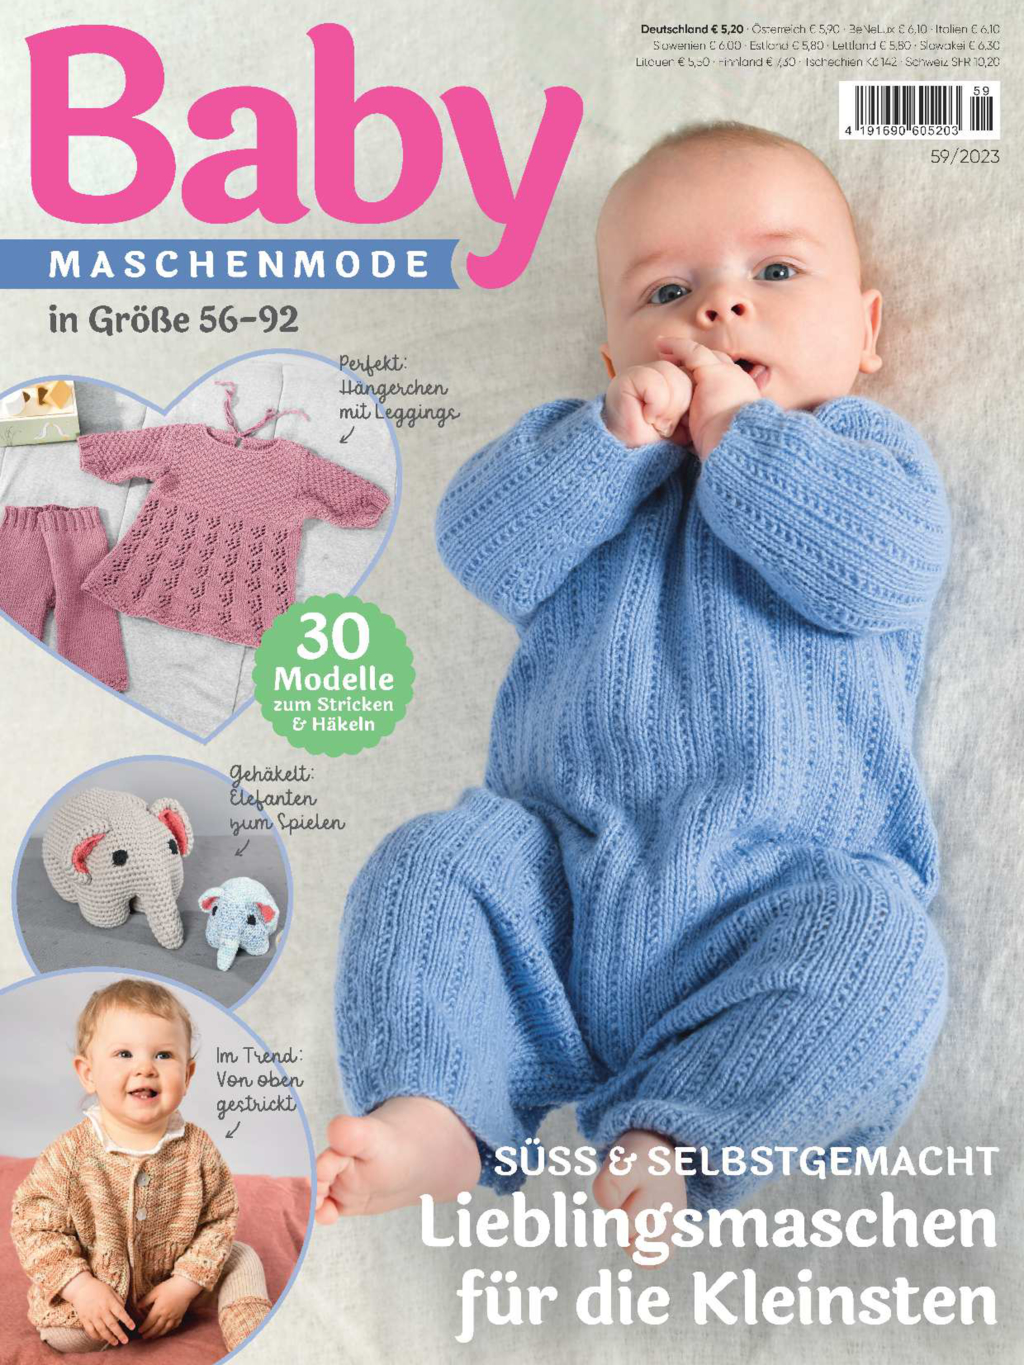 Baby Maschenmode 59/2023 - Lieblingsmaschen für die Kleinsten